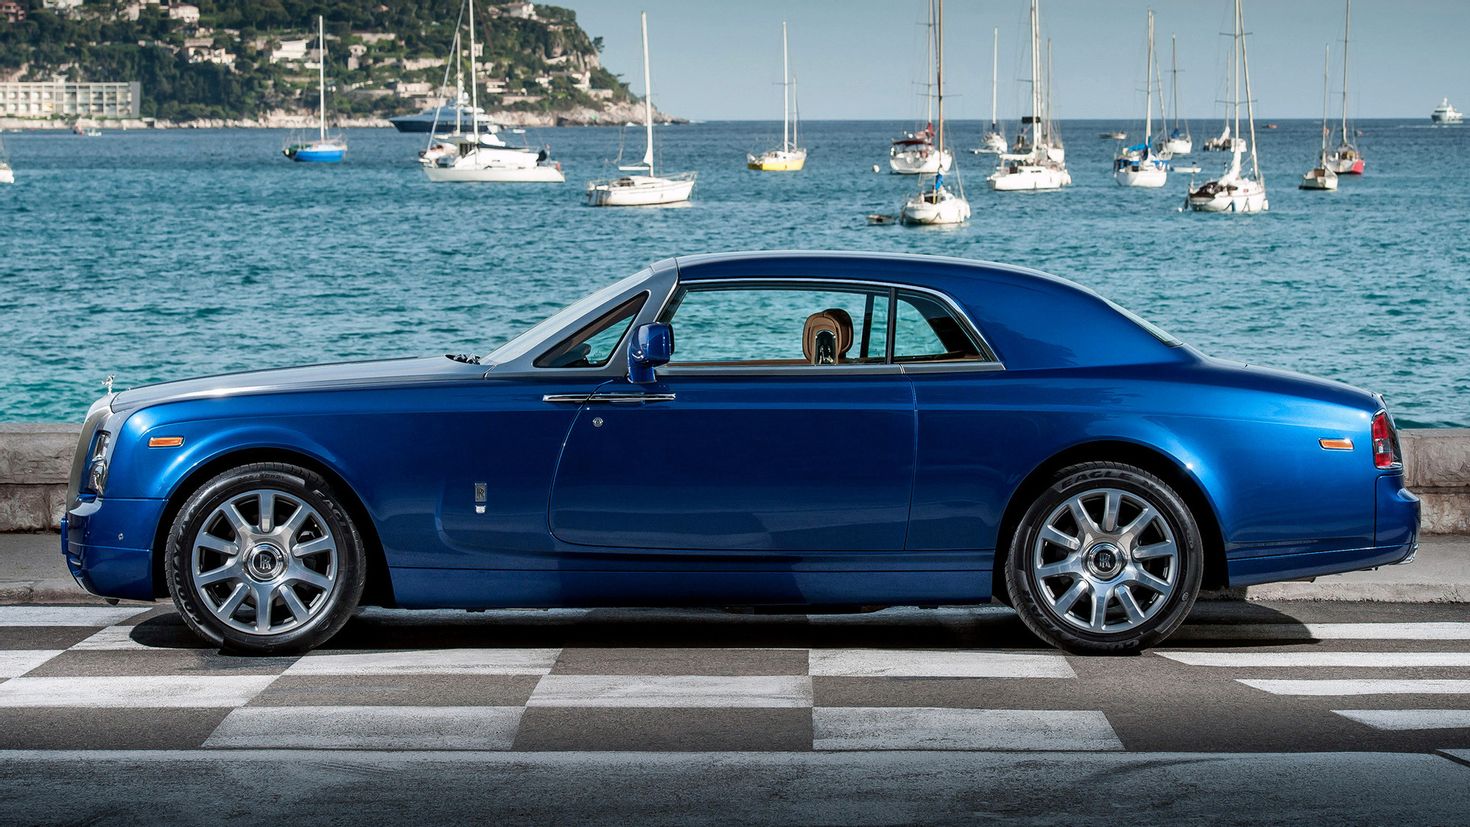 Роллс купе. Rolls Royce Phantom Coupe. Rolls Royce Phantom купе. Rolls Royce Phantom VII купе. Rolls-Royce Phantom Coupe 7.